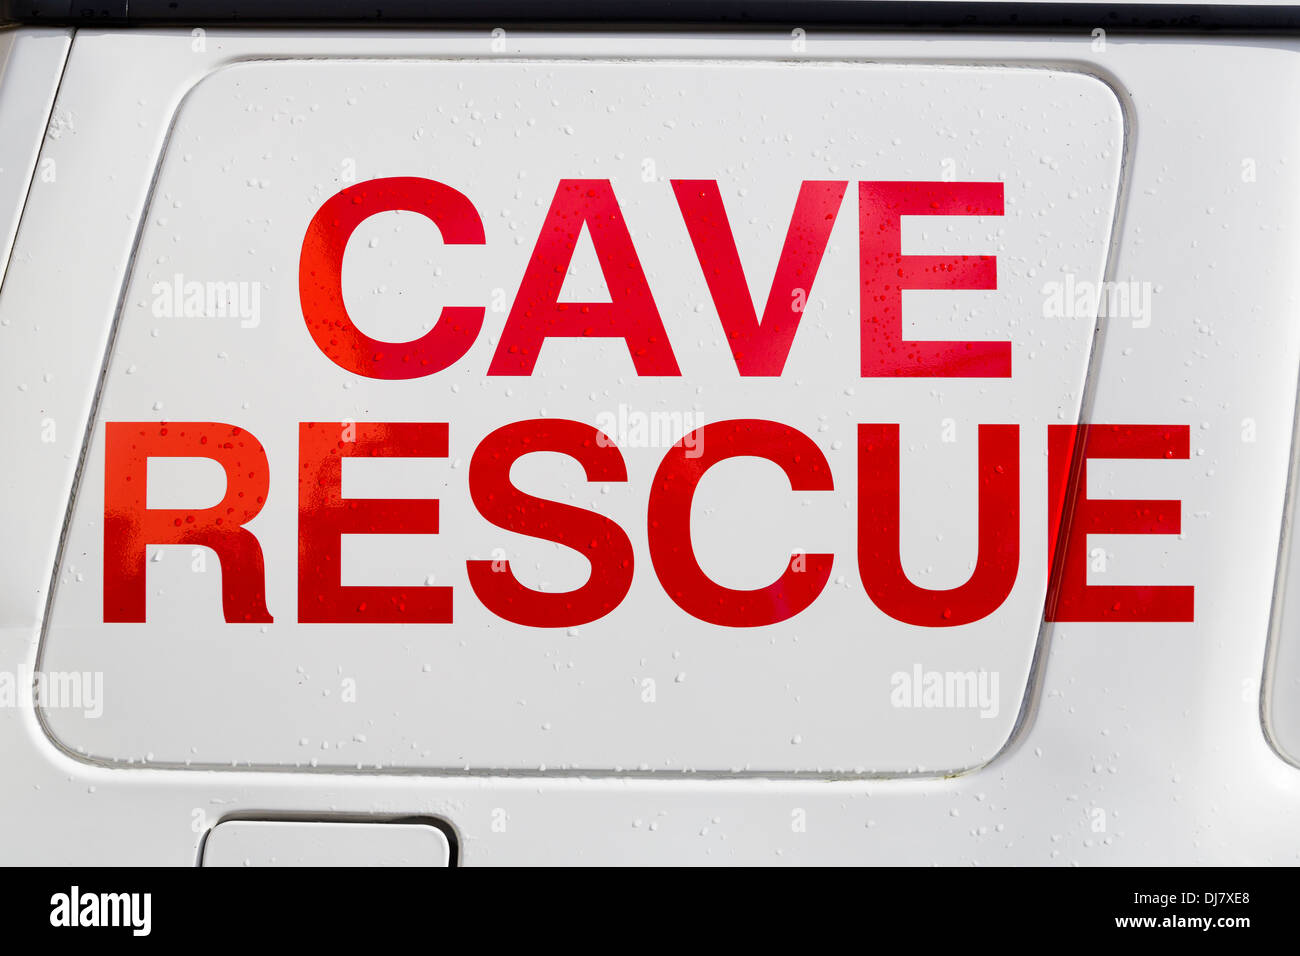 Irische Cave Rescue Organisation anmelden Seite von Land Rover Stockfoto